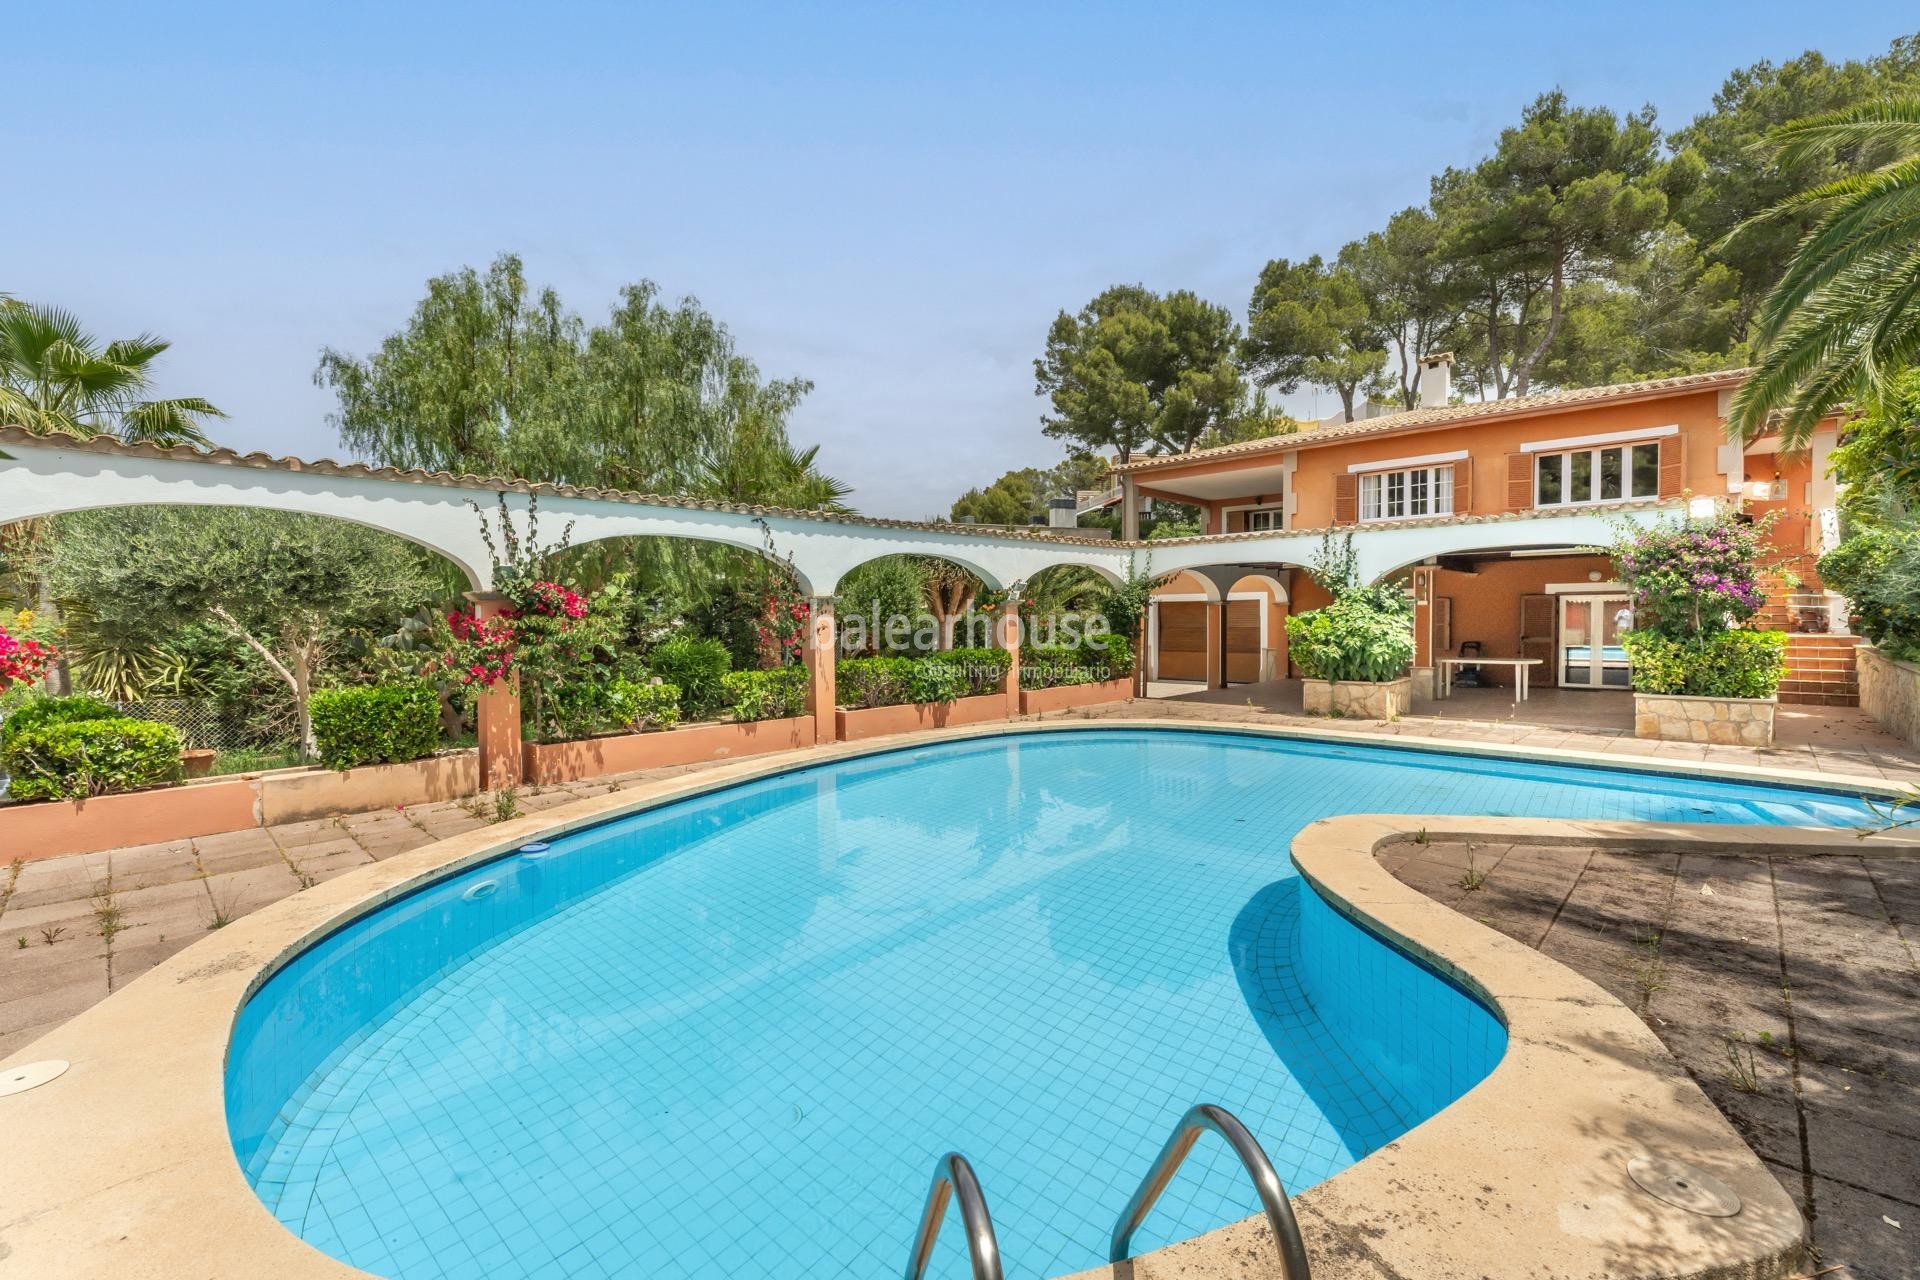 Cuidada villa mediterránea con grandes terrazas y piscina cerca de la playa en Santa Ponsa